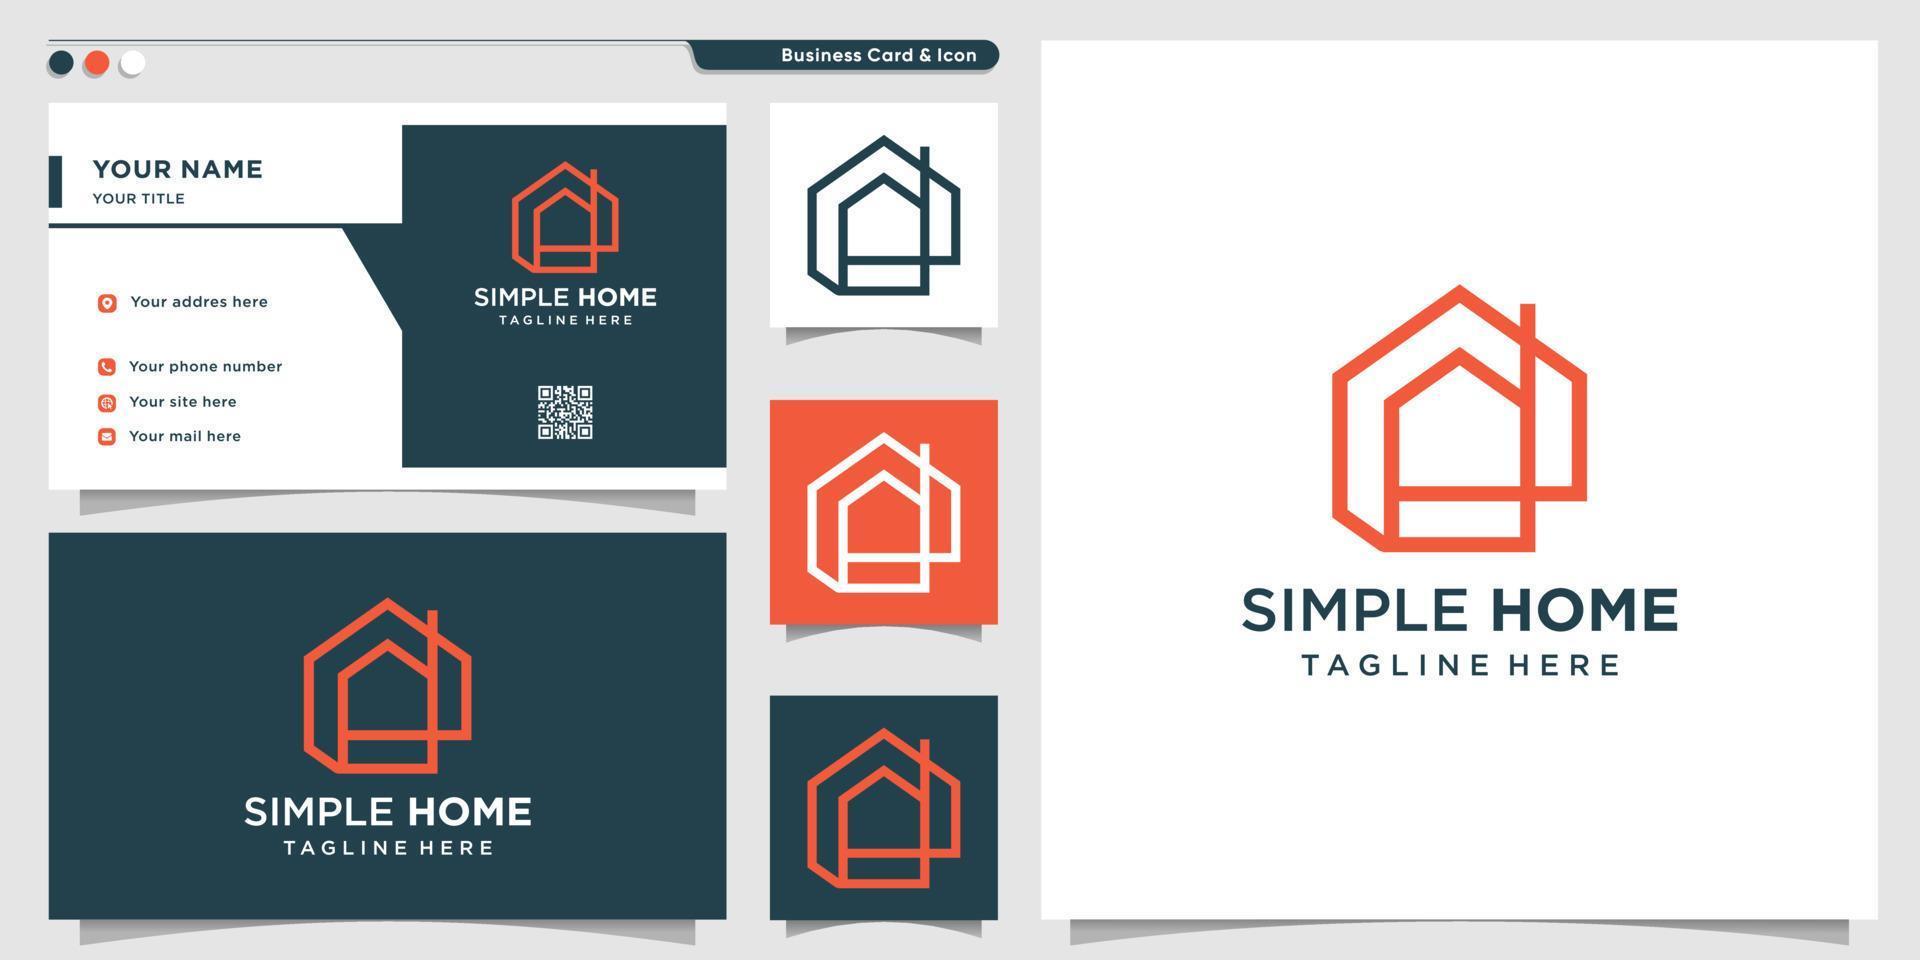 eenvoudig huislogo met lijnstijl en ontwerpsjabloon voor visitekaartjes, huis, gebouw, eenvoudig, premium vector